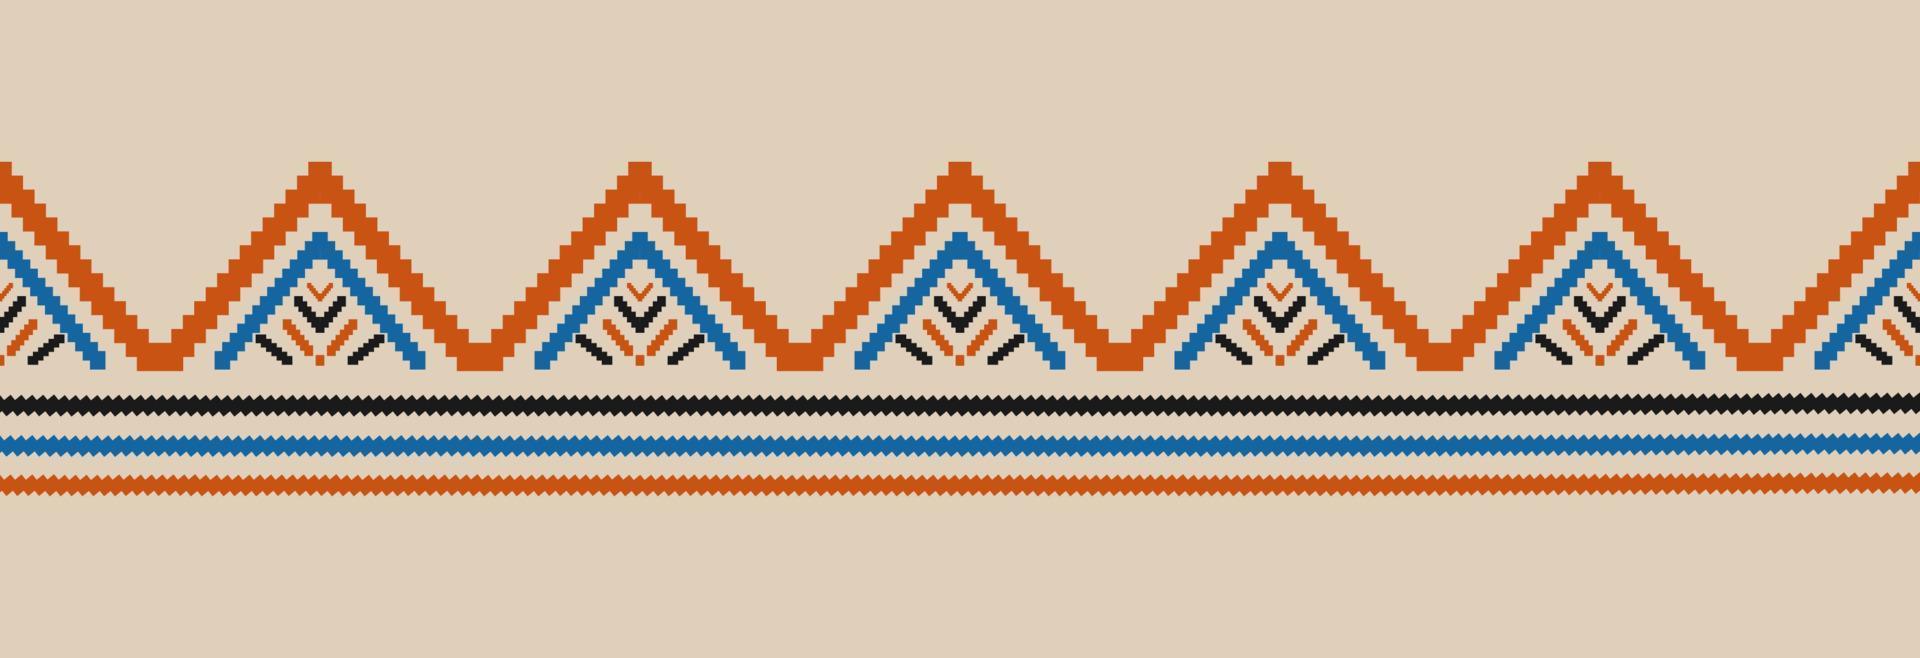 arte de patrón tribal étnico fronterizo. bordado folklórico, y estilo mexicano. estampado de adornos geométricos aztecas. vector